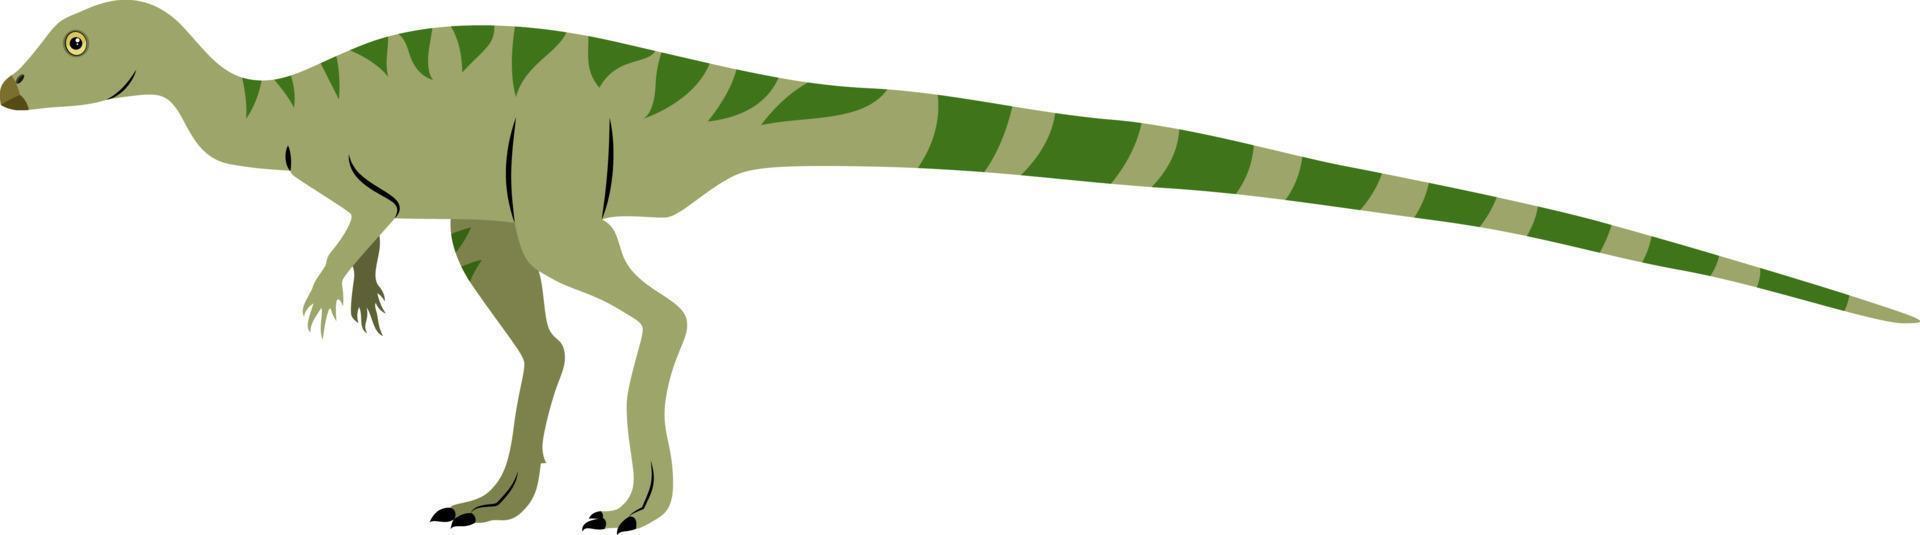 leaellynasaura, ilustración, vector sobre fondo blanco.